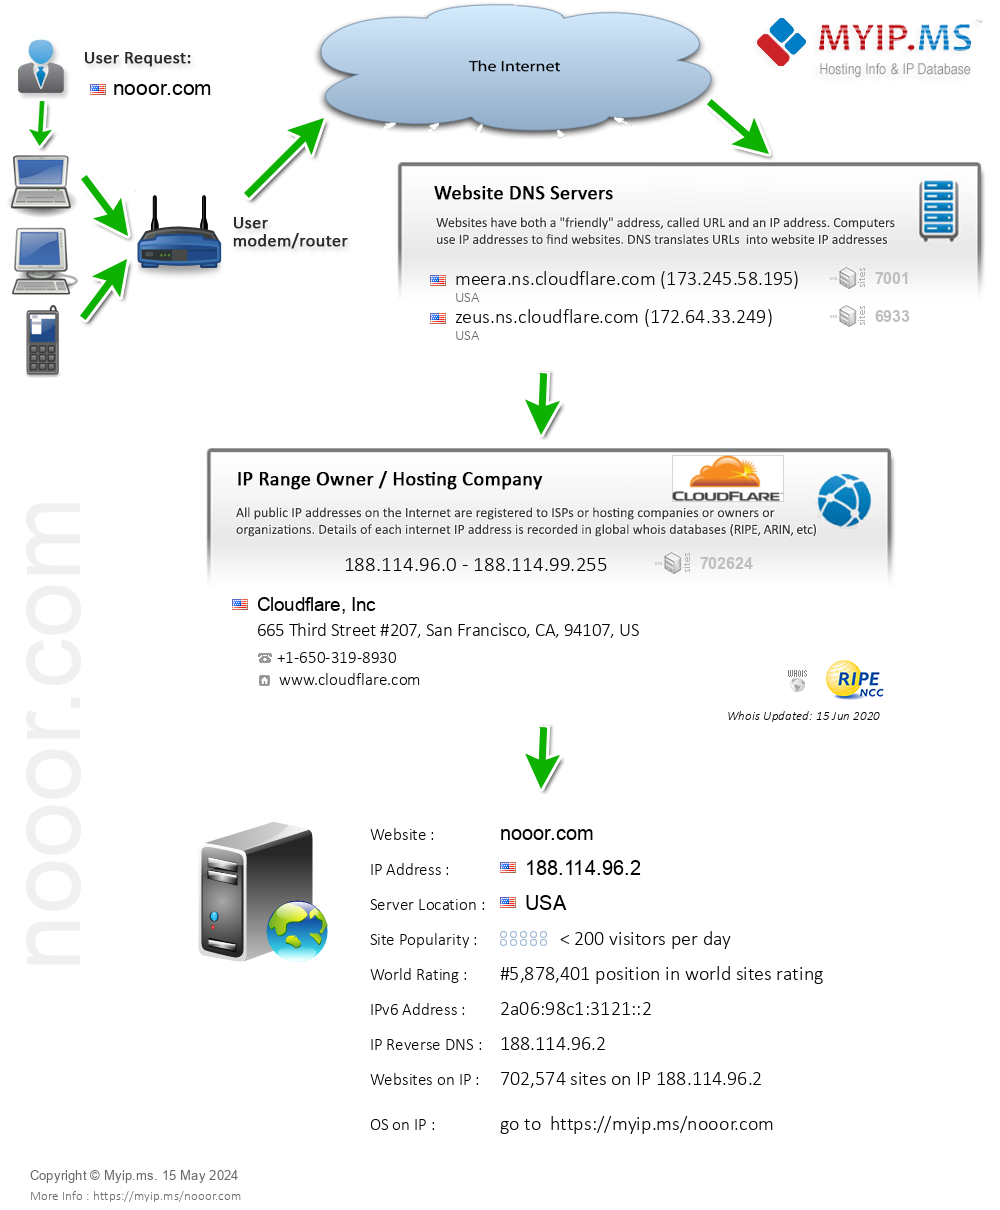 Nooor.com - Website Hosting Visual IP Diagram